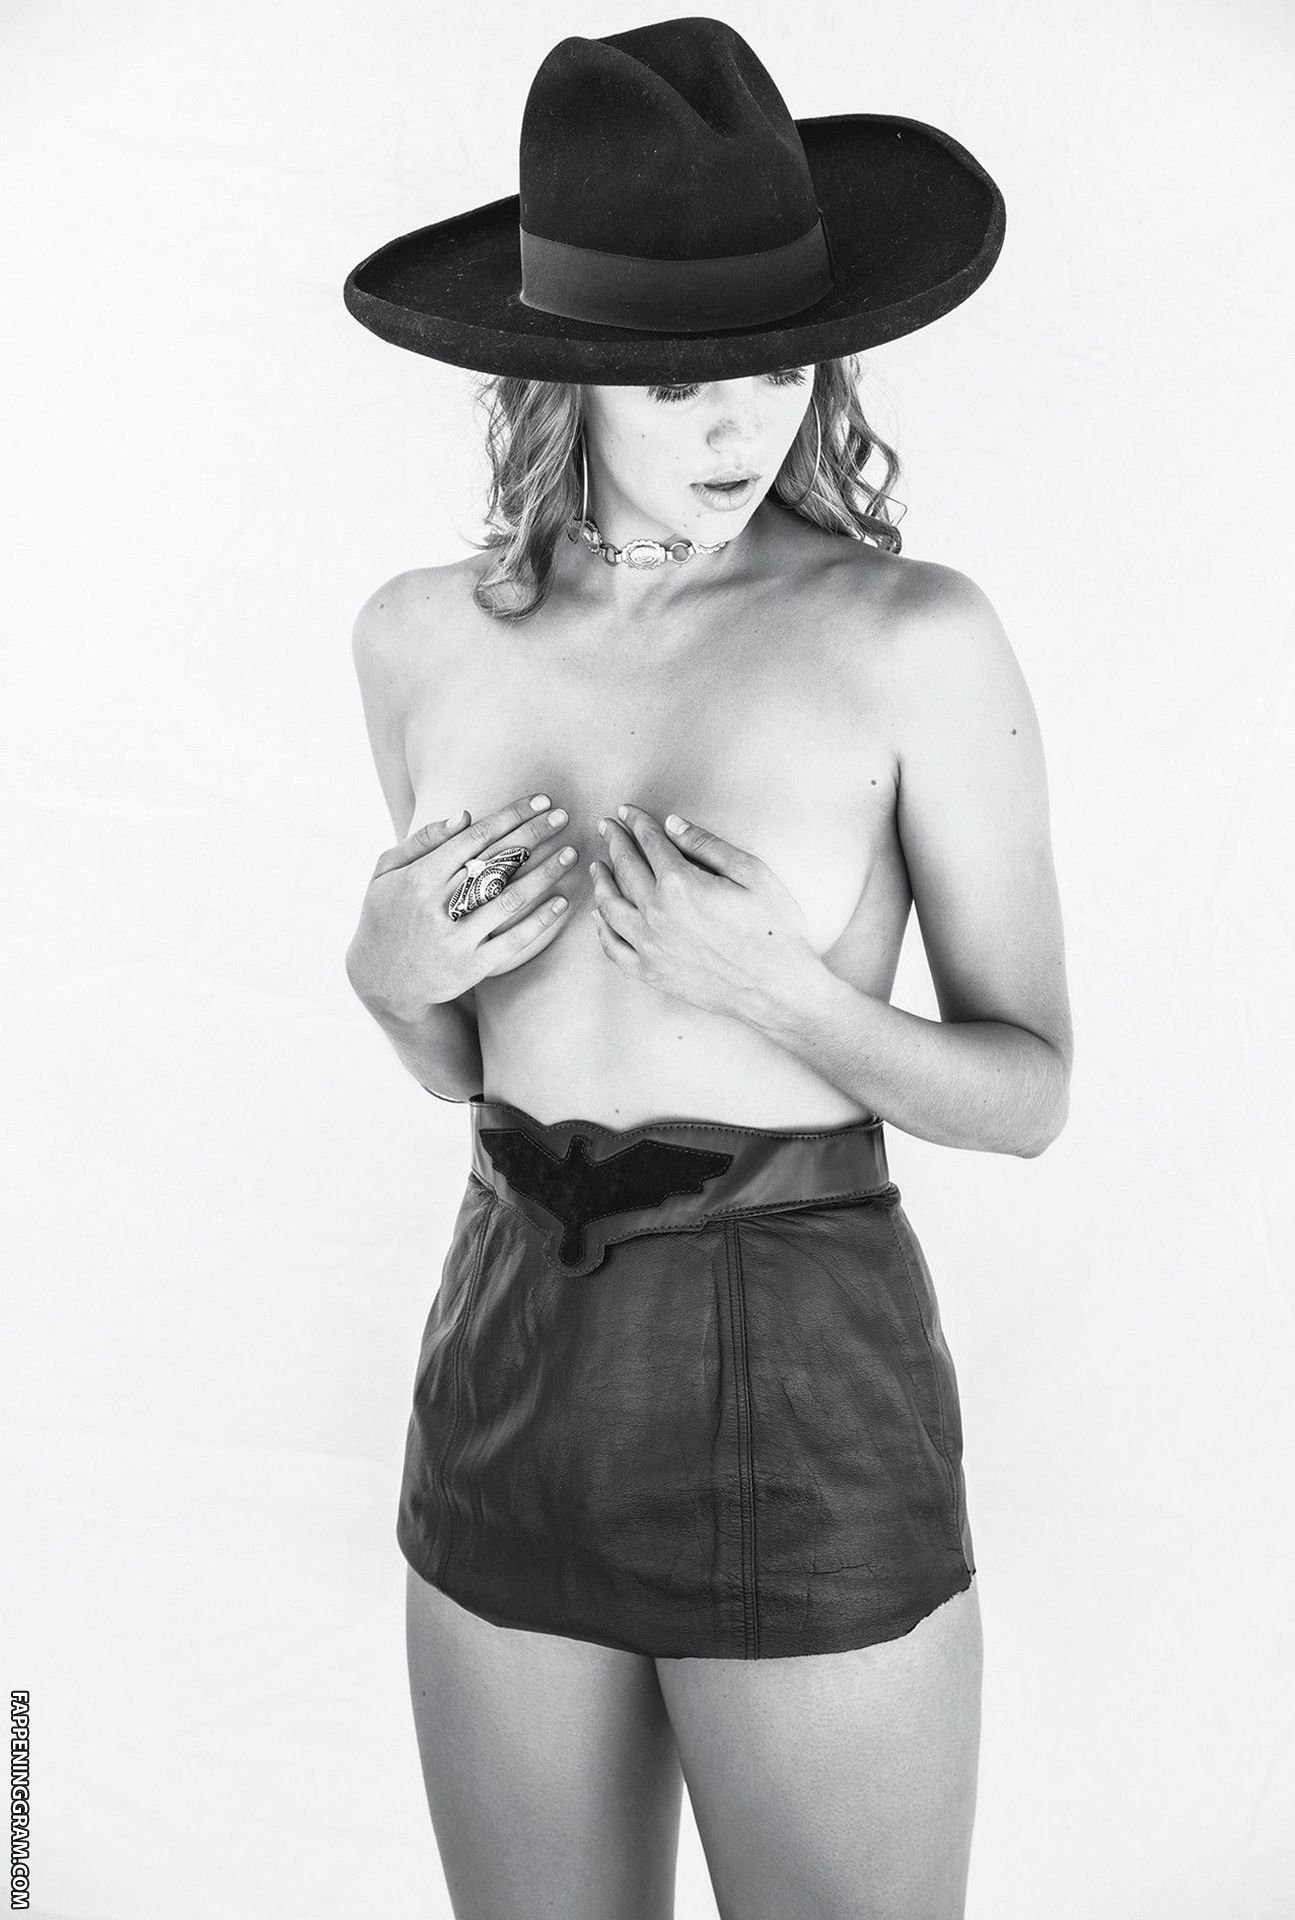 Olivia Brower Nude.